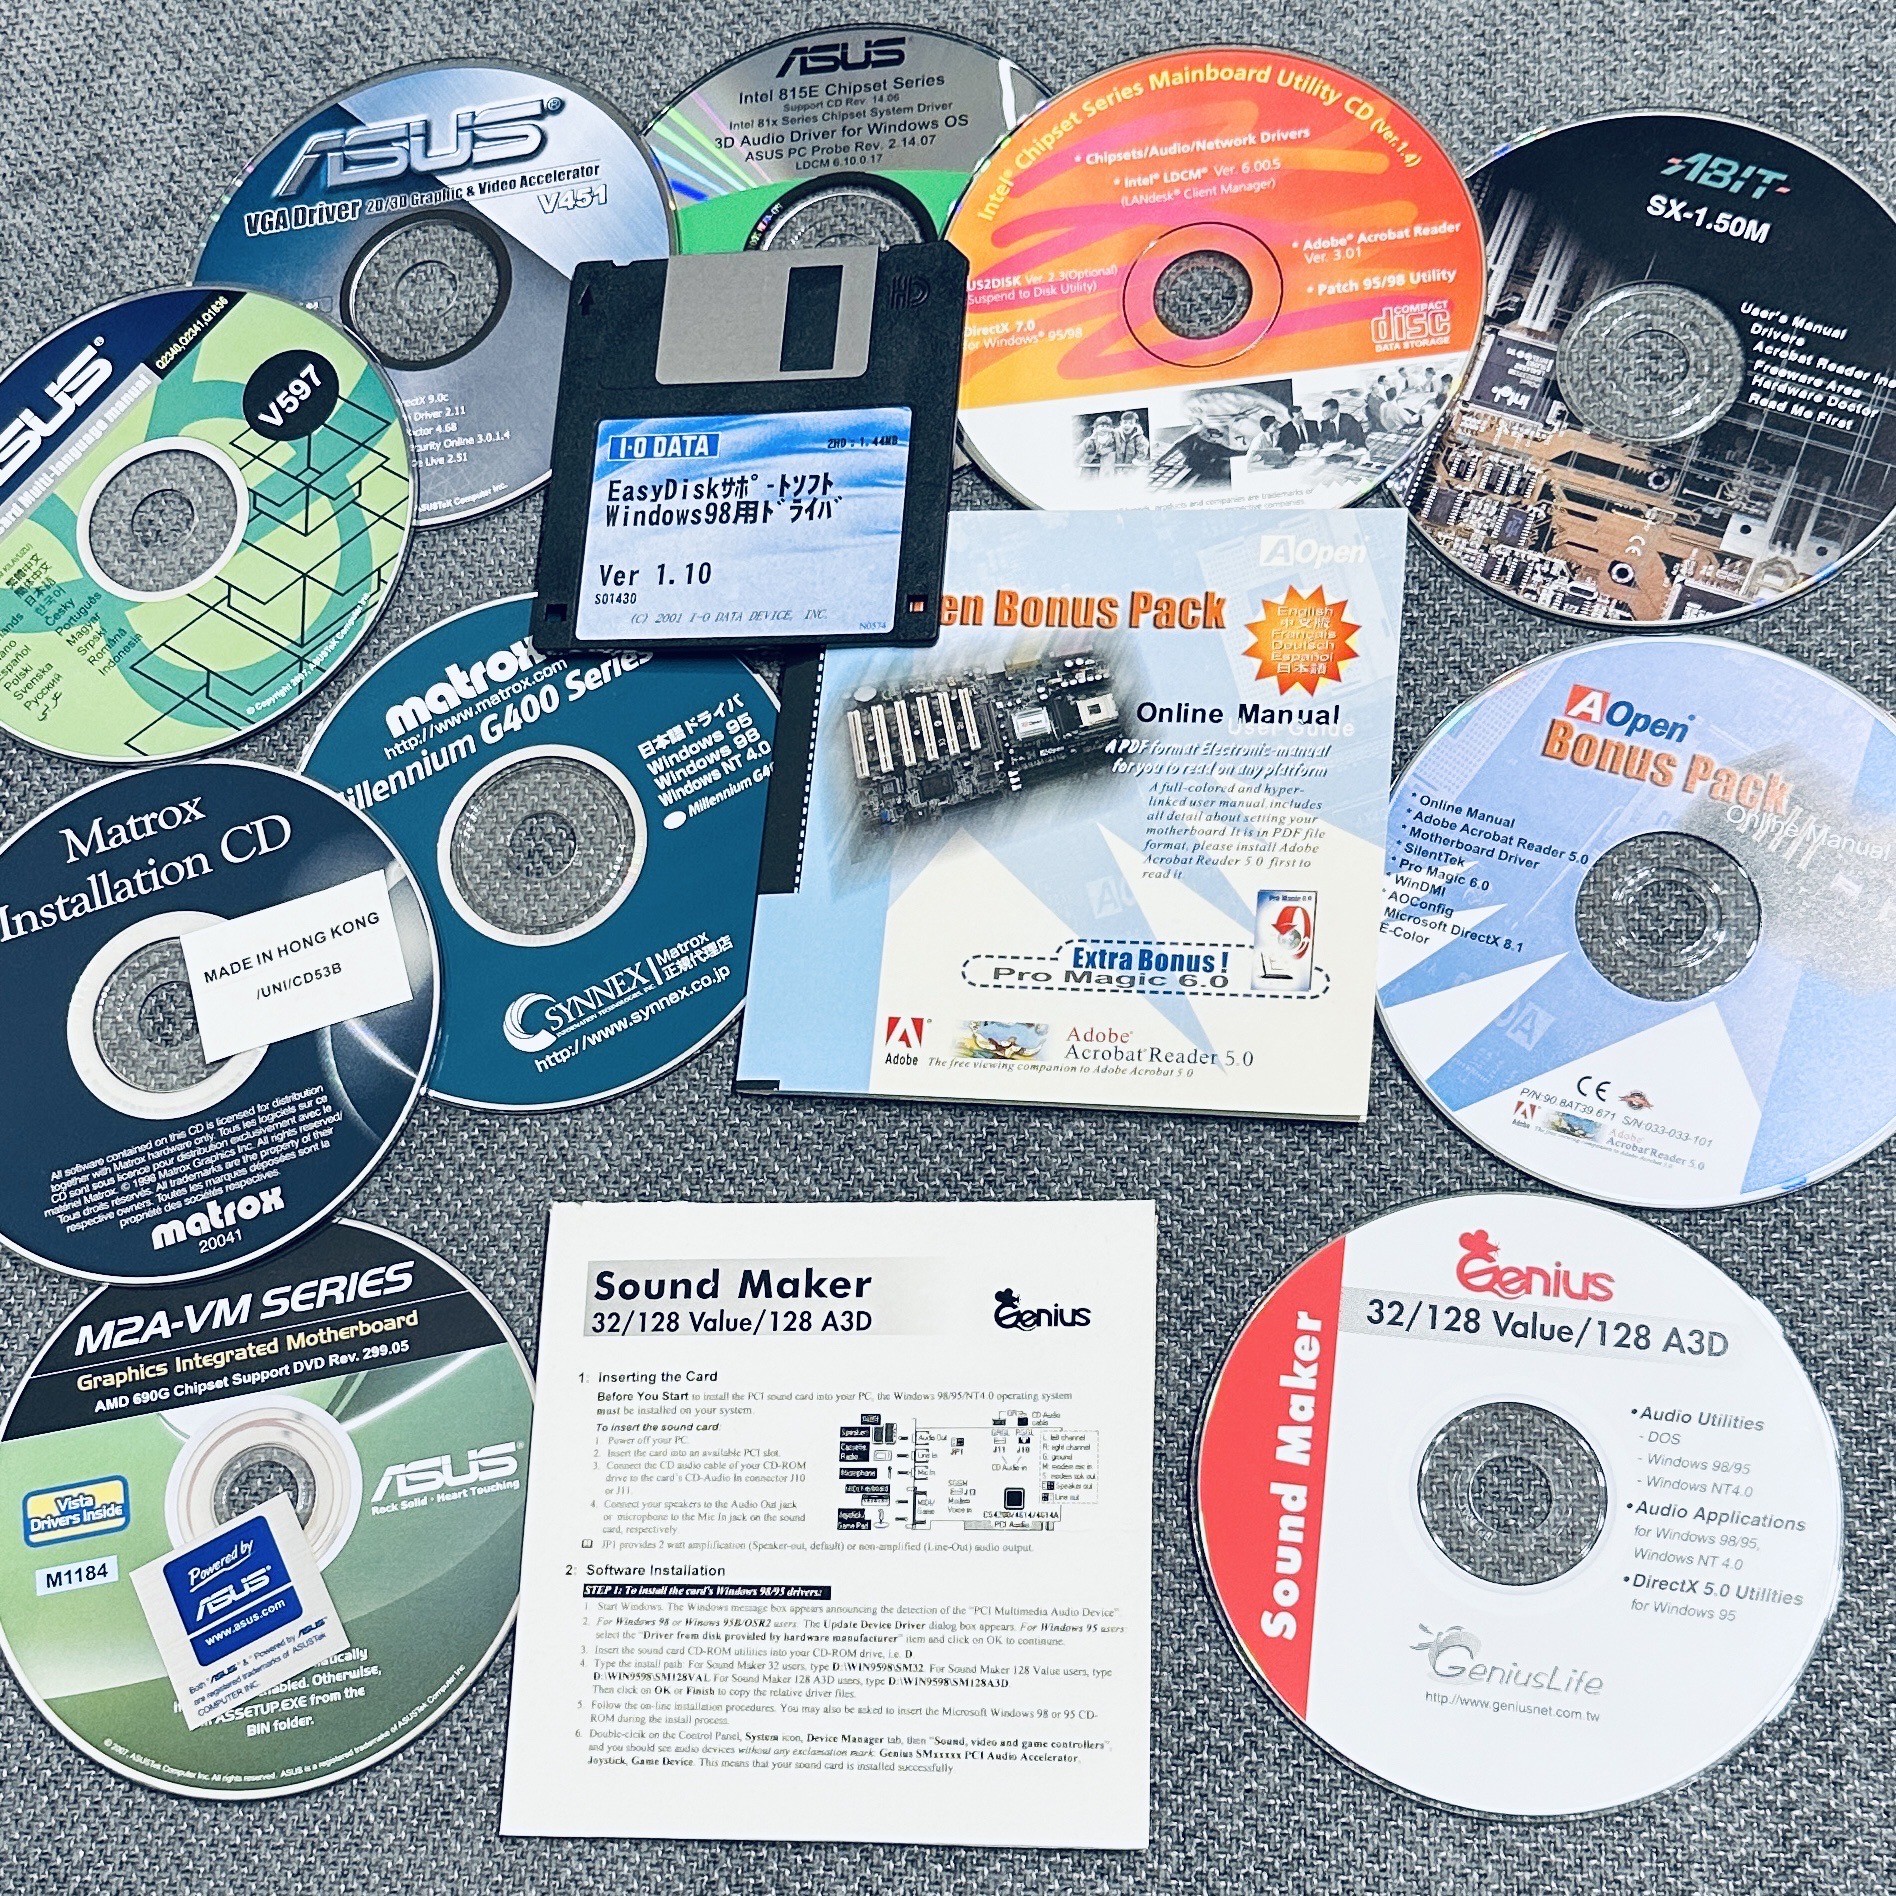 古いデバイスドライバの入ったCD-ROMやフロッピーディスク。Asus, AOpen, Matrox, Abit など。